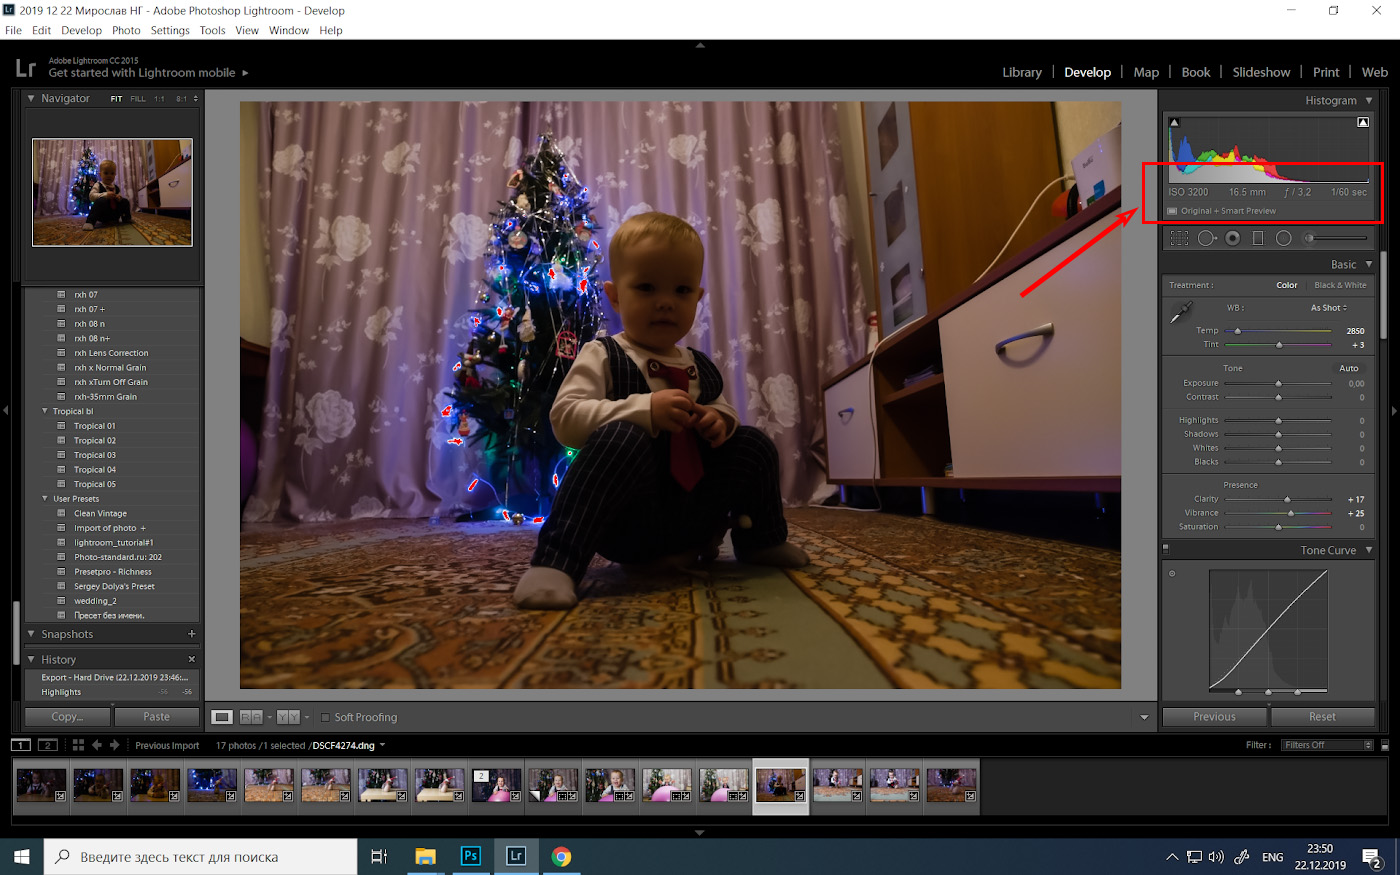 2. Пример съемки детского портрета на фоне новогодней ёлки с освещением от люстры на потолке. Снято на Fujifilm X-T10 с объективом Fujinon 16-55mm f/2.8.